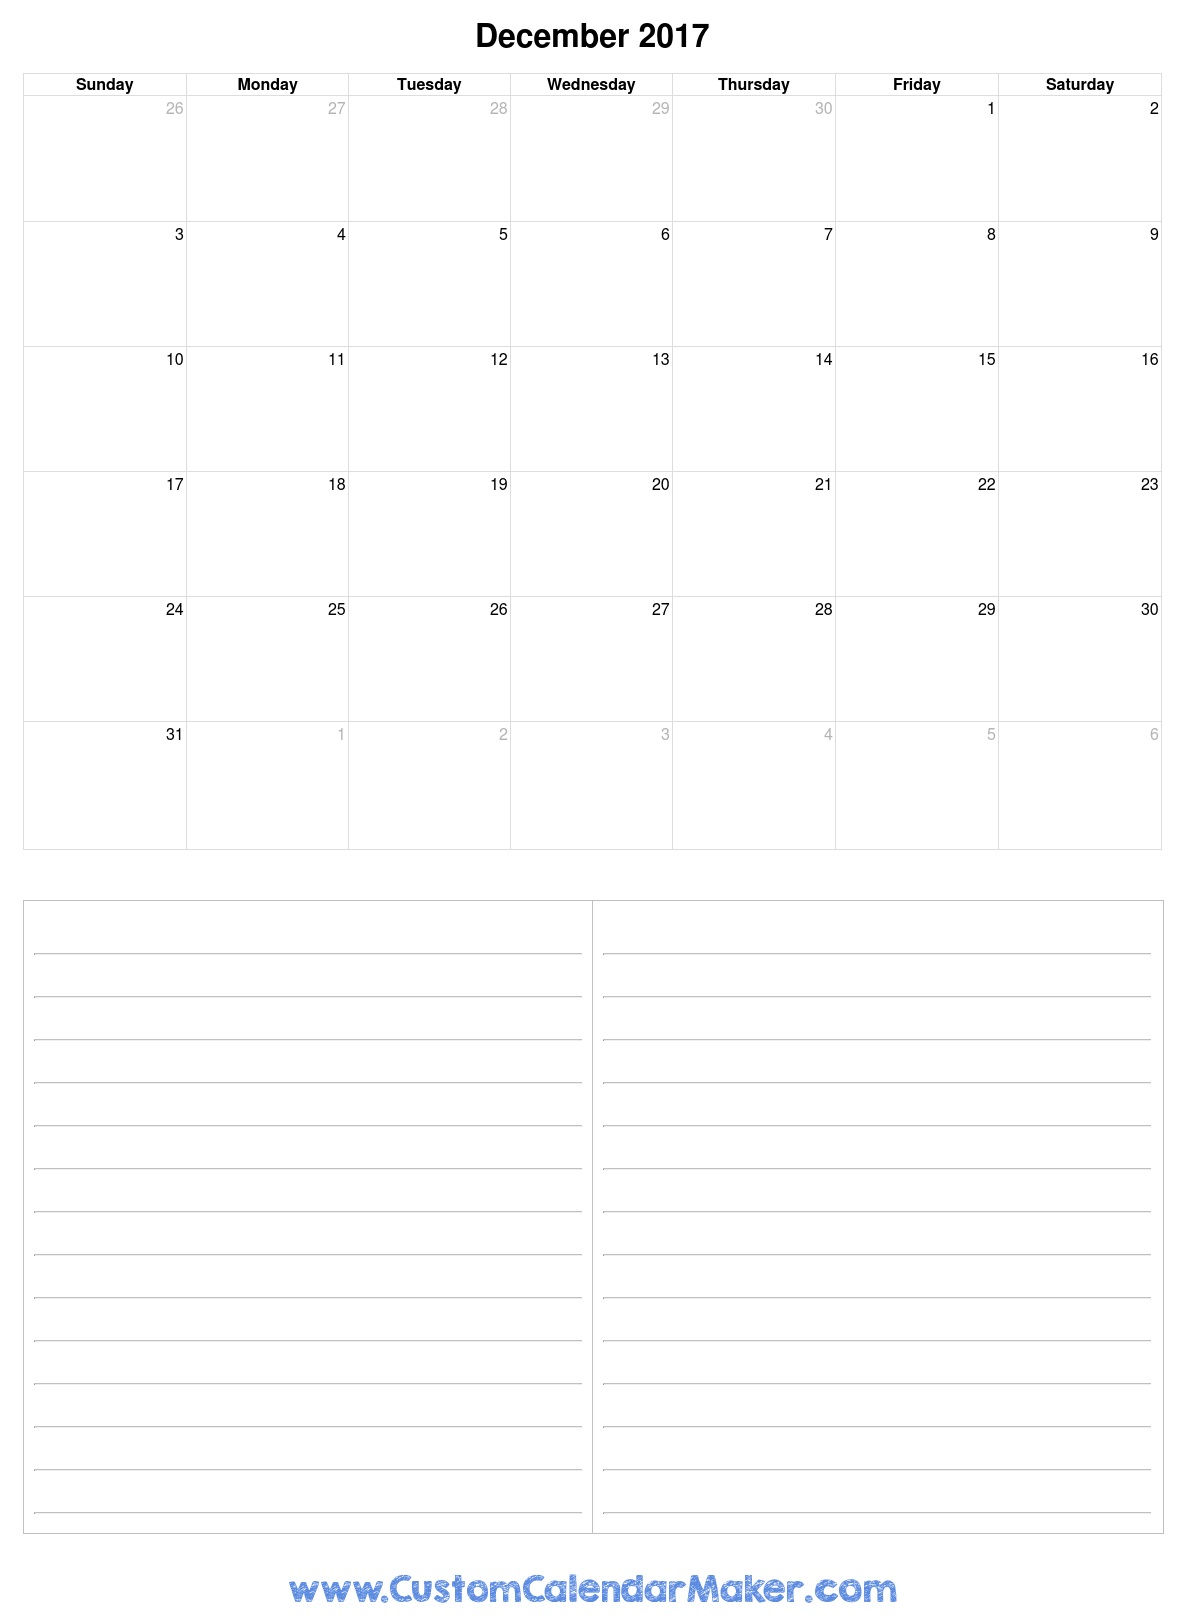 December Monthly Calendar 2017  Printable Pdf Template inside December 2017 Calendar Printable